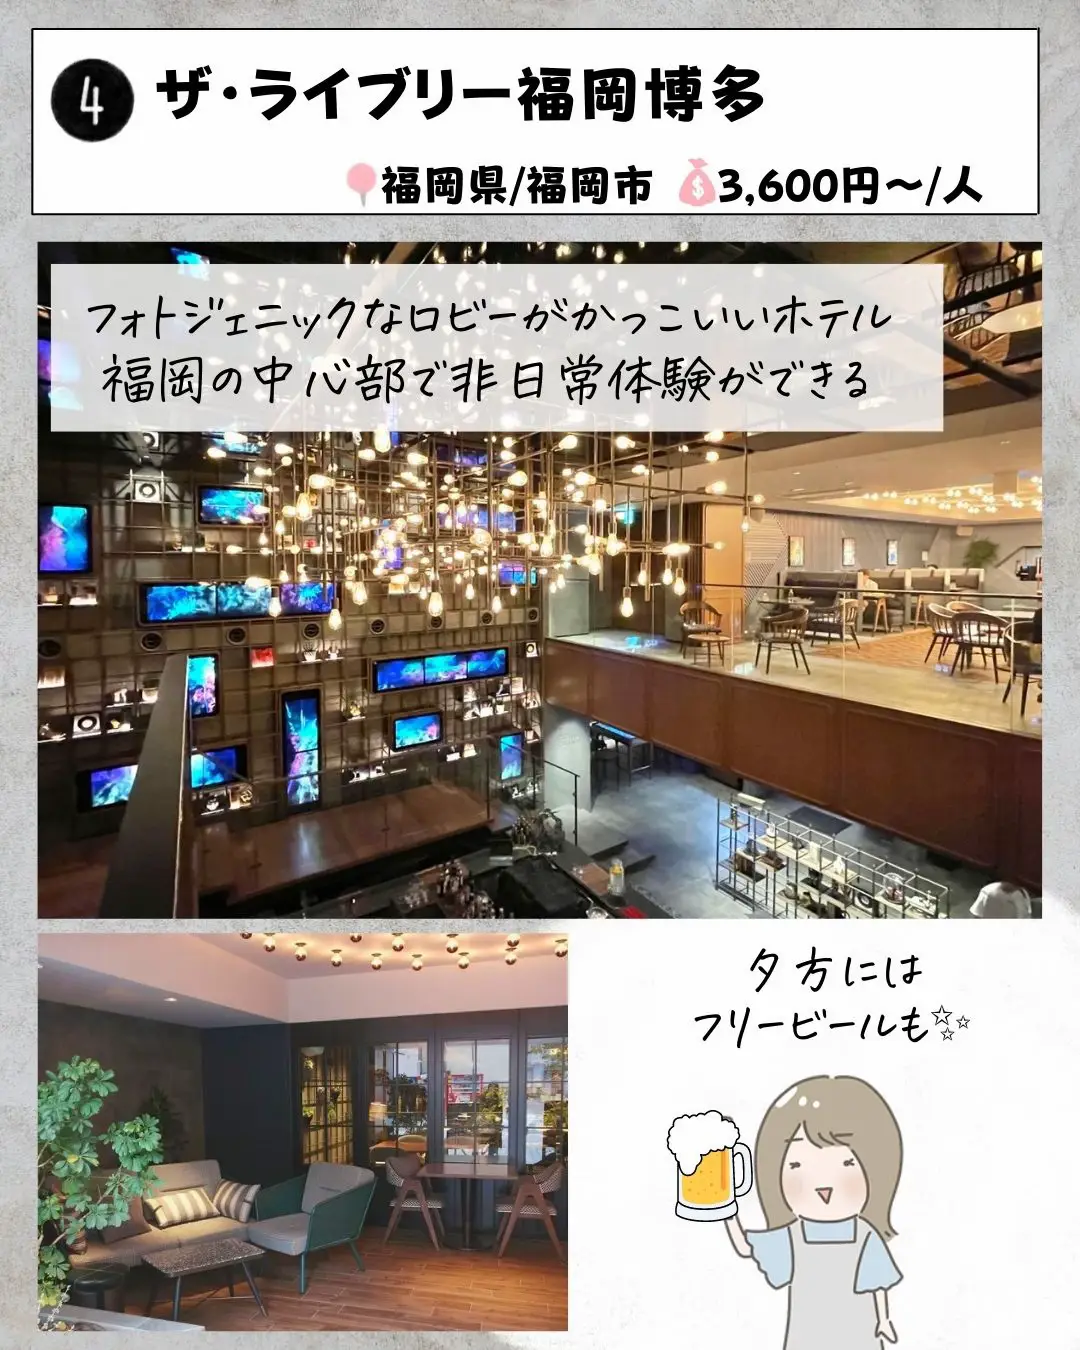 全国旅行支援で行きたい！1万円以下福岡ホテルの画像 (4枚目)